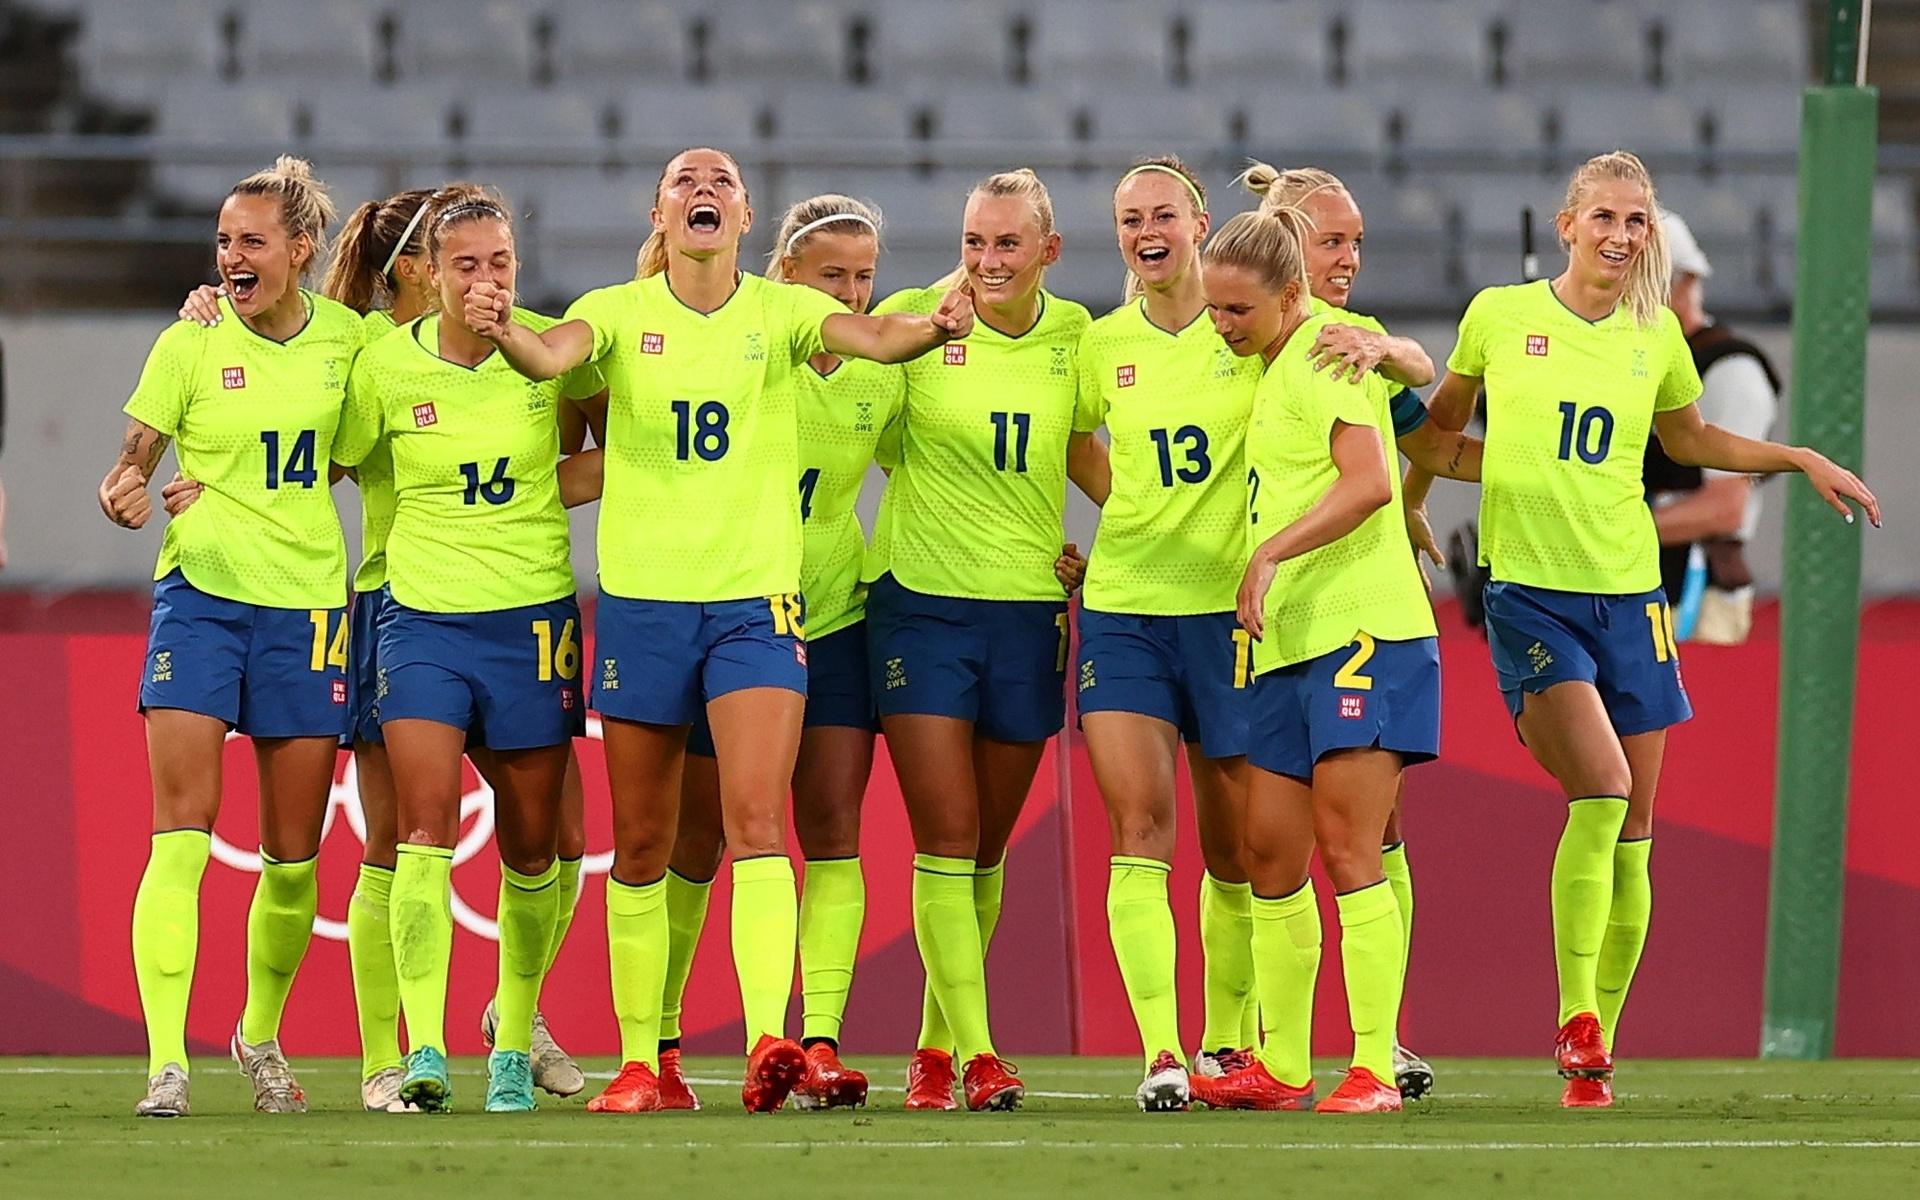 Sverige krossade USA i öppningsmatchen samtidigt var det tröjfärgen som väckte mest känslor bland tittarna